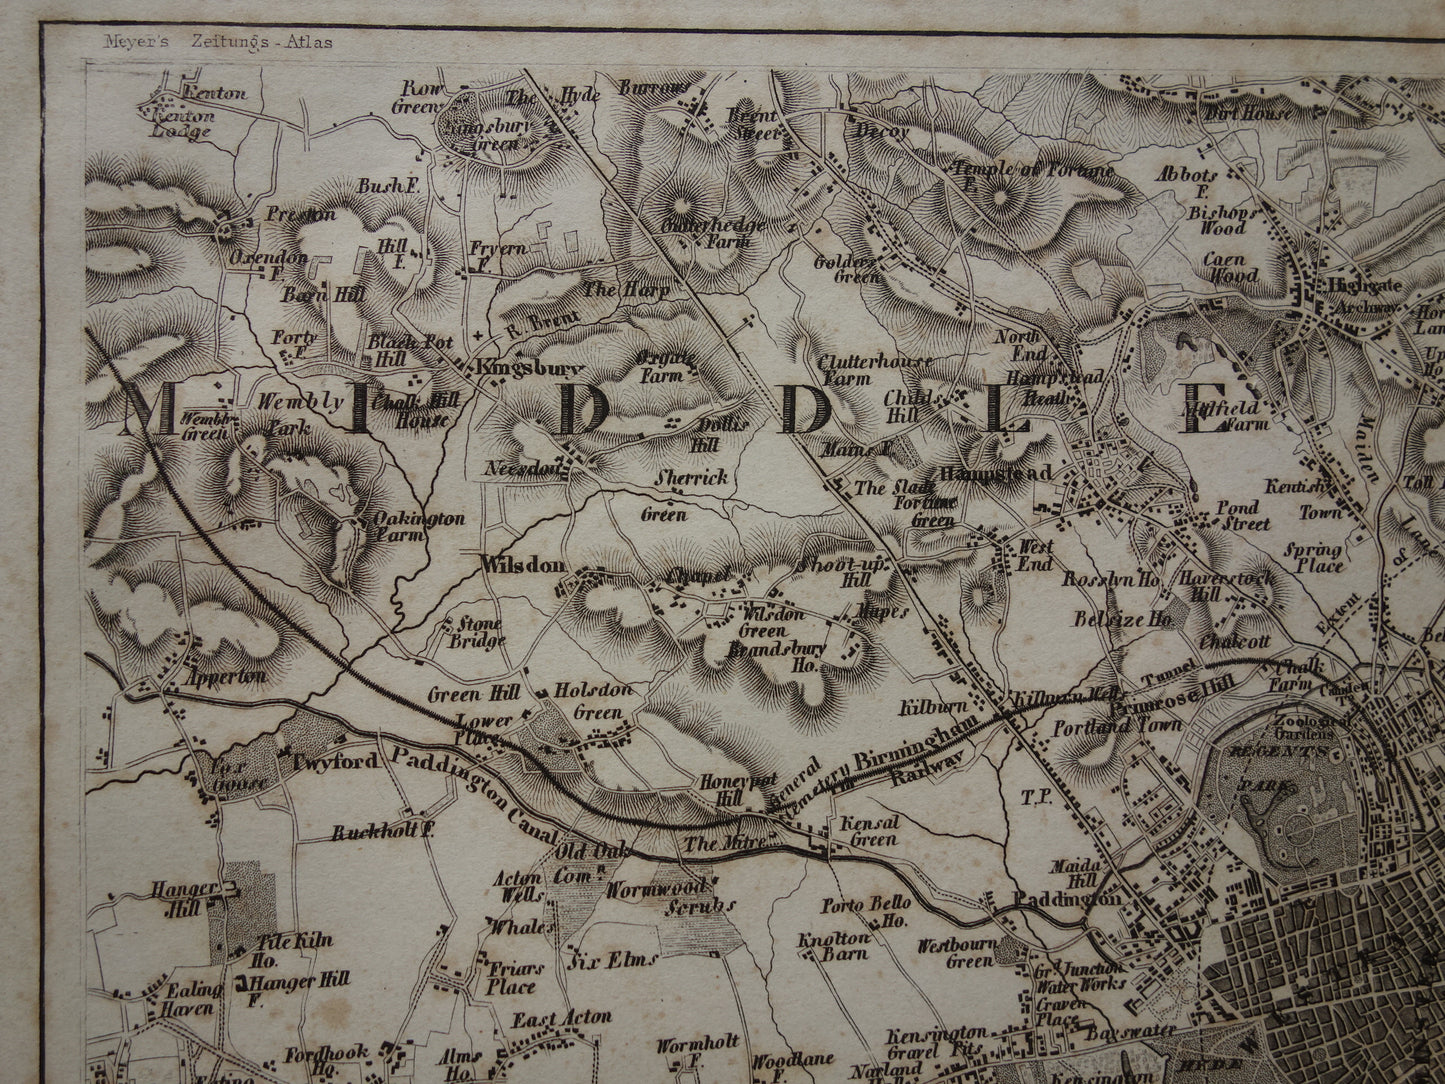 LONDEN Oude kaart van Londen Engeland - Originele 175+ jaar oude plattegrond